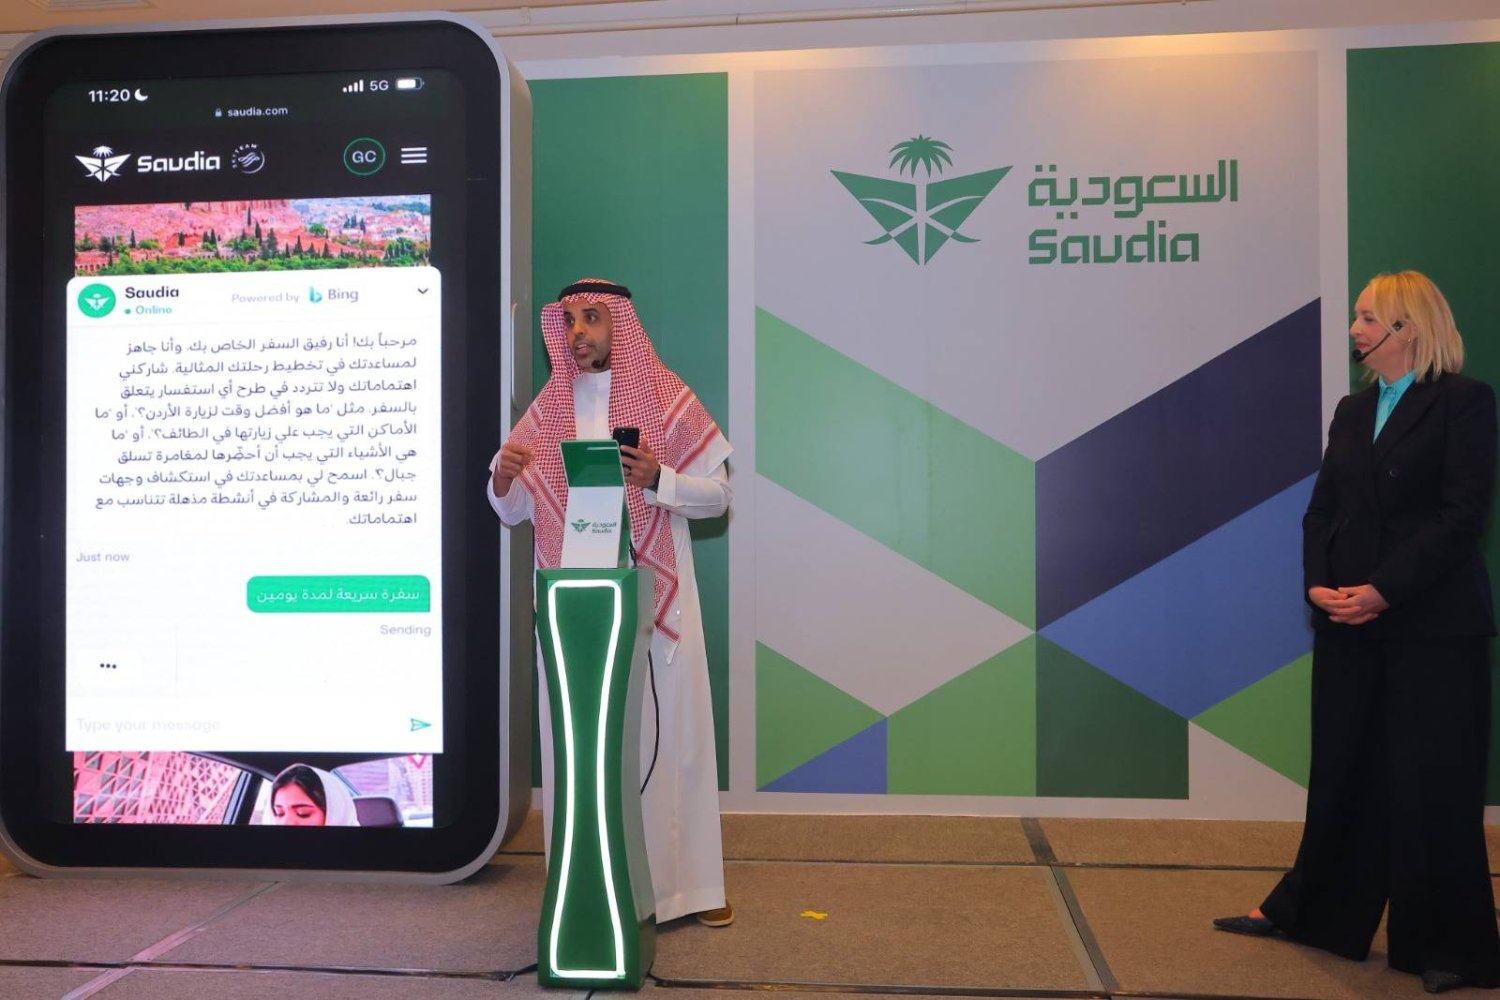 مدير عام مجموعة السعودية المهندس إبراهيم العُمر متحدثاً للحضور خلال حفل إطلاق الخدمة الجديدة في الرياض (الشرق الأوسط)